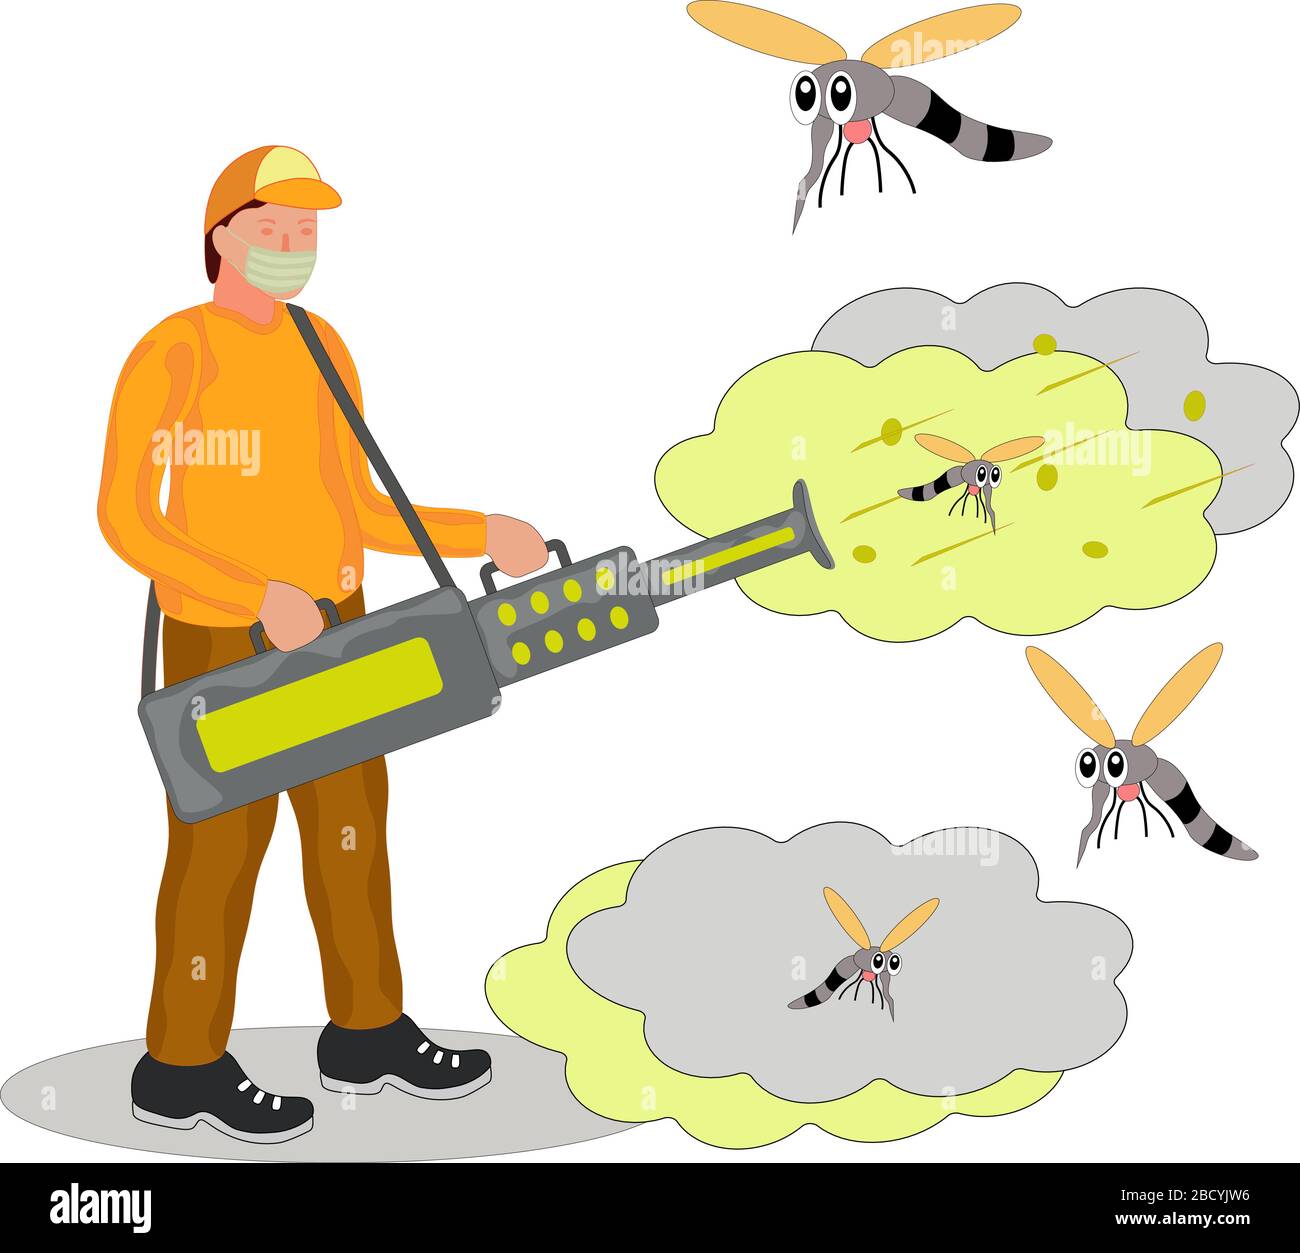 illustrazioni di disinfettanti che si appannano per uccidere gli insetti Illustrazione Vettoriale